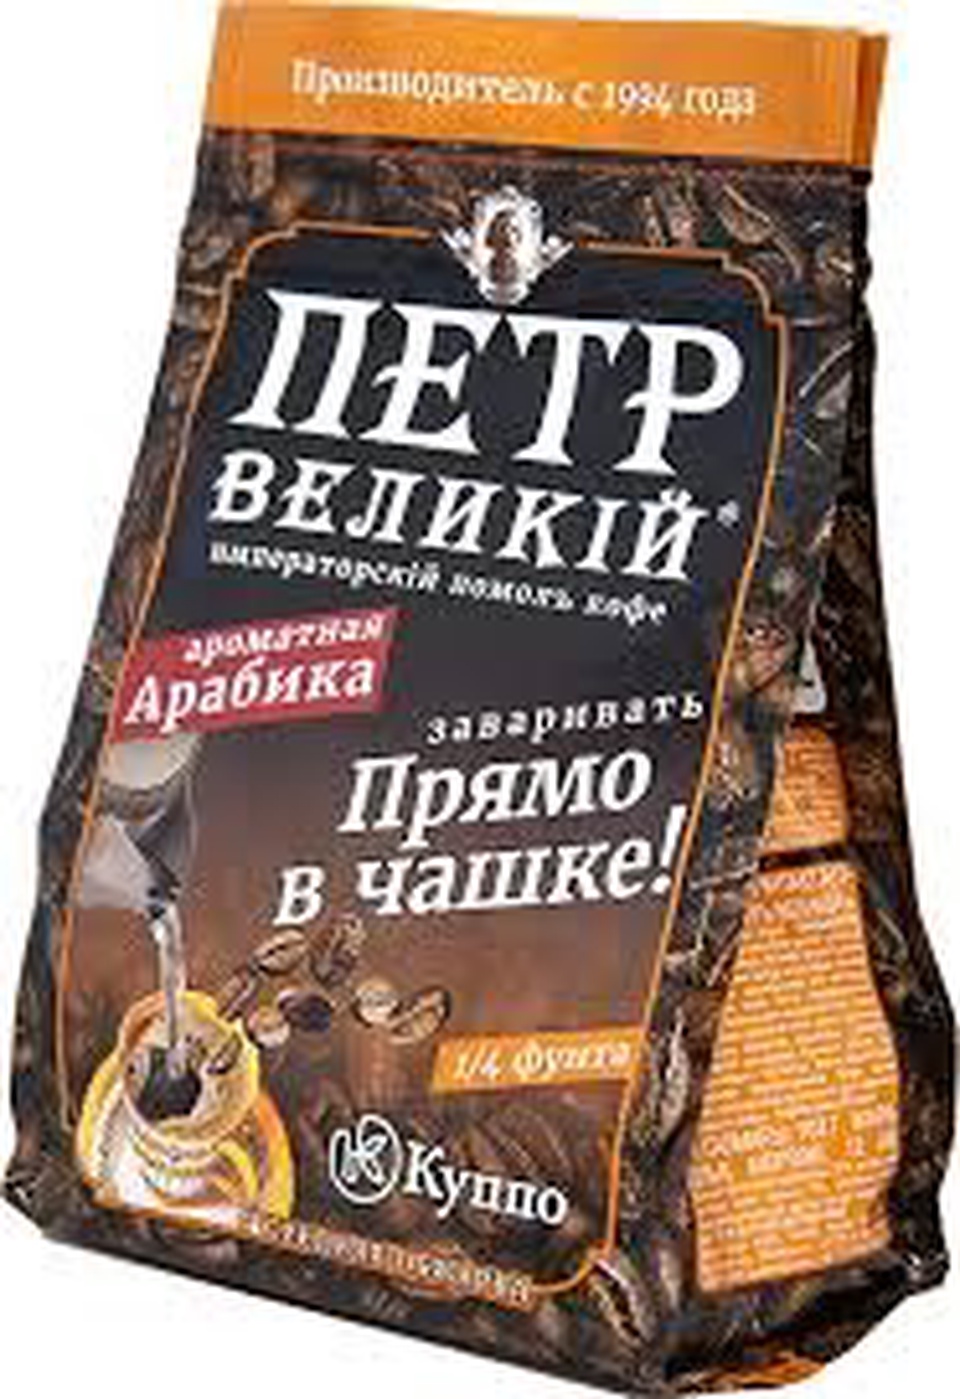 Кофе Пётр Великий "В ЧАШКУ" 102г - 111,36 ₽, заказать онлайн.